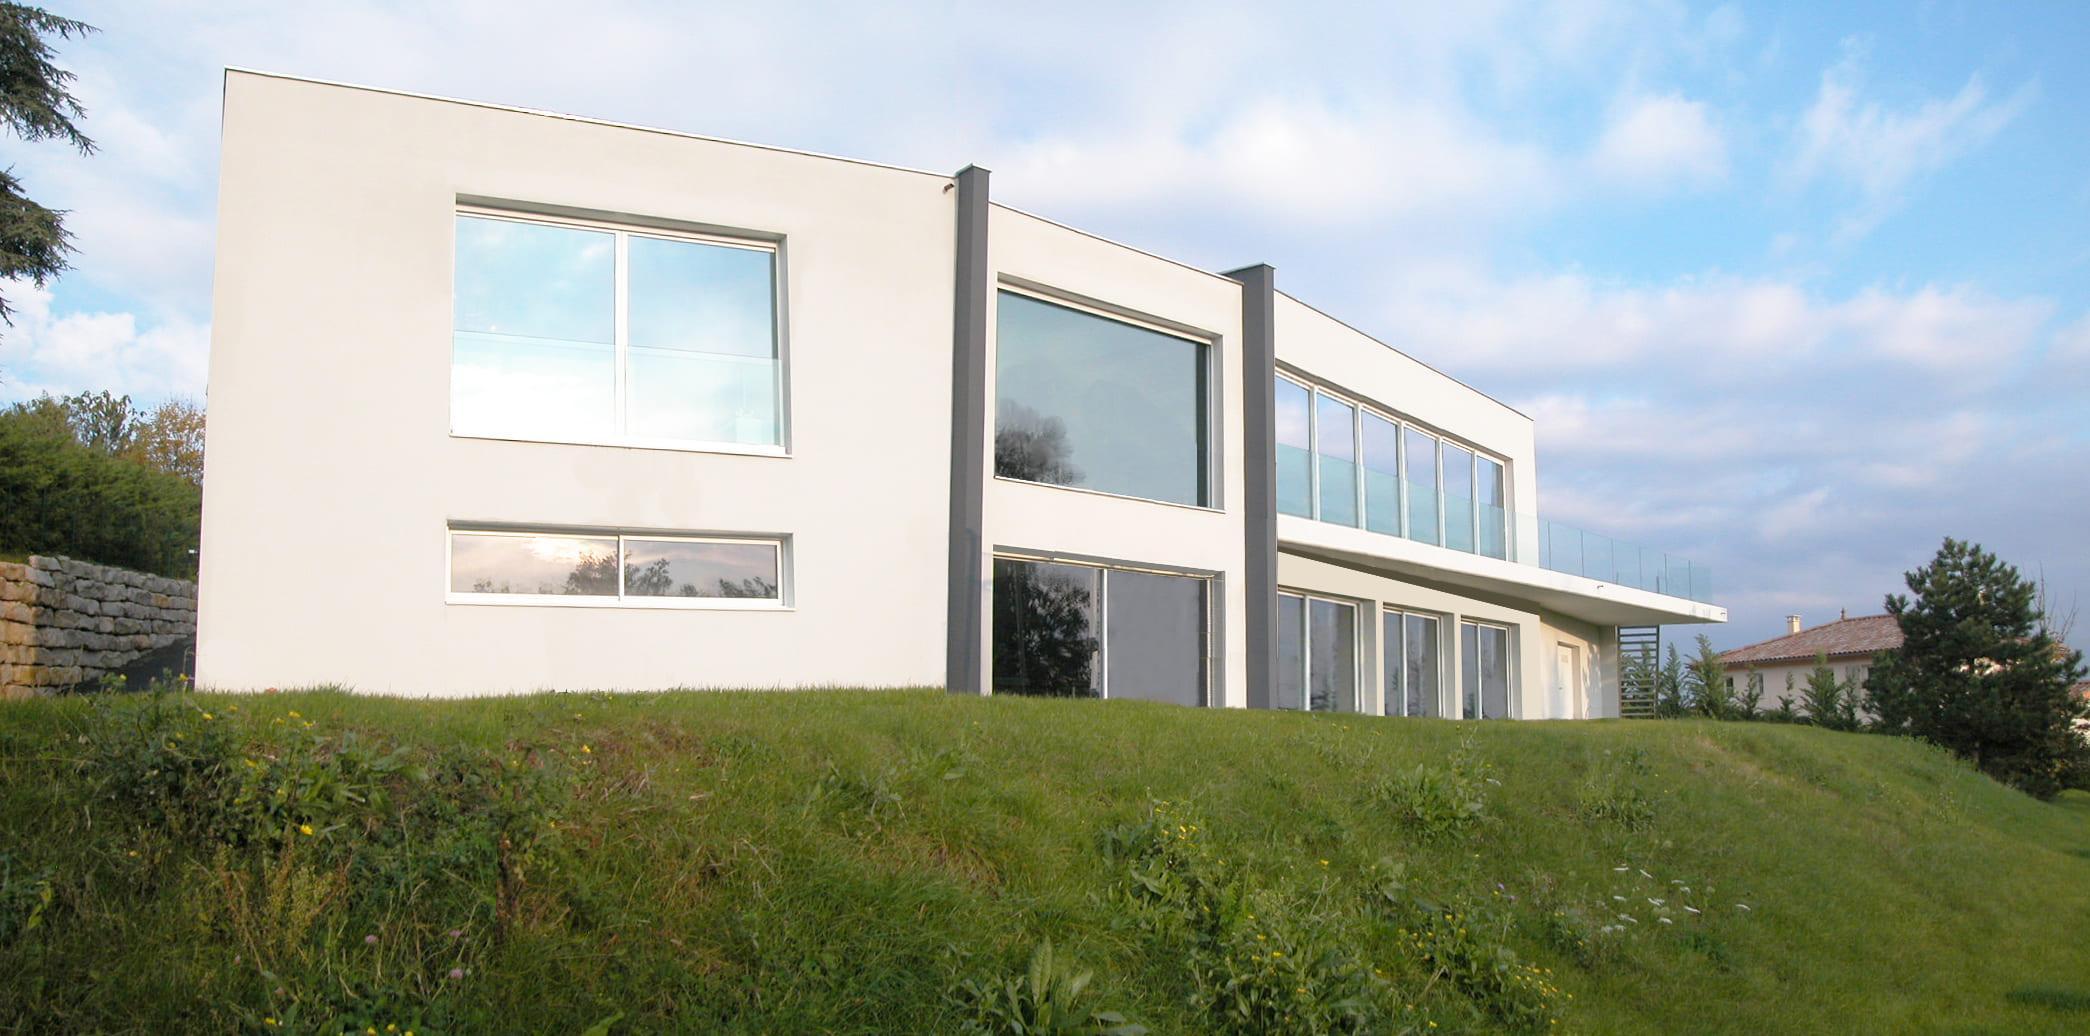 Maison contemporaine panoramique 390 m² - Architecte Claude Veyret Lyon